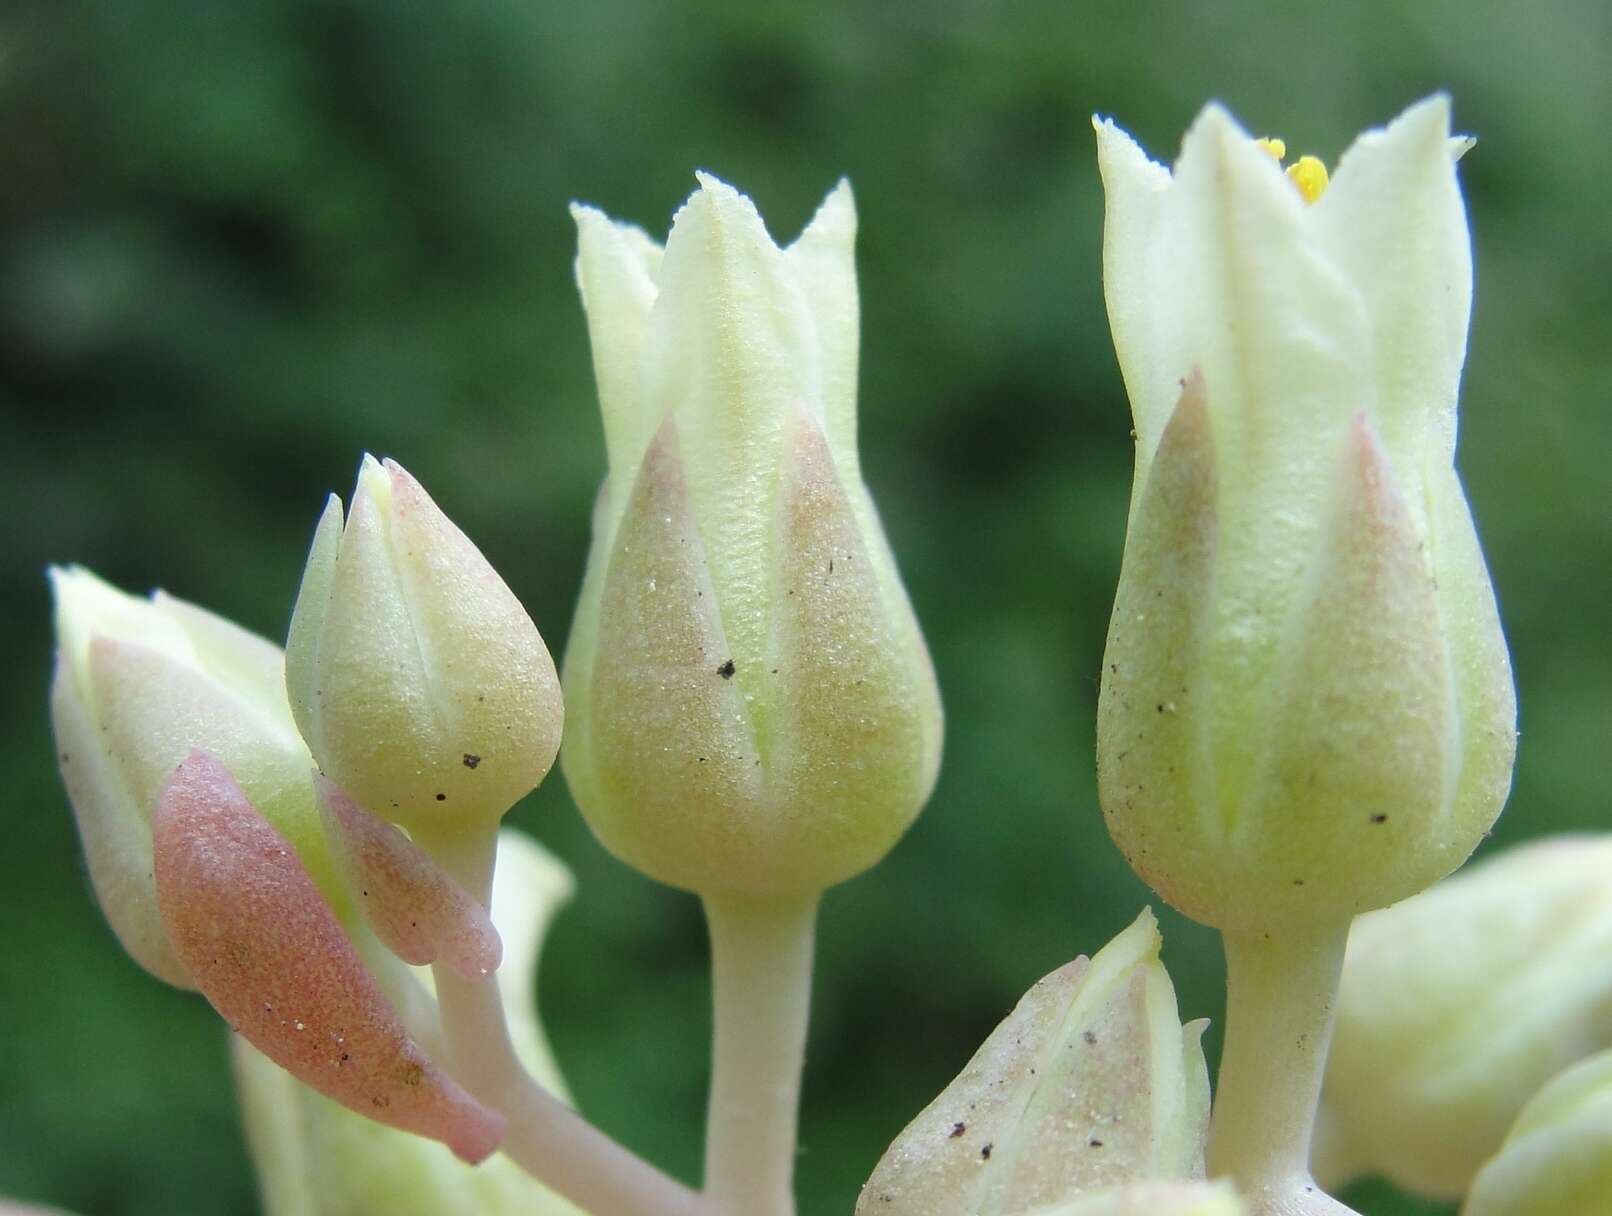 Image of Sedum paradisum subsp. subroseum